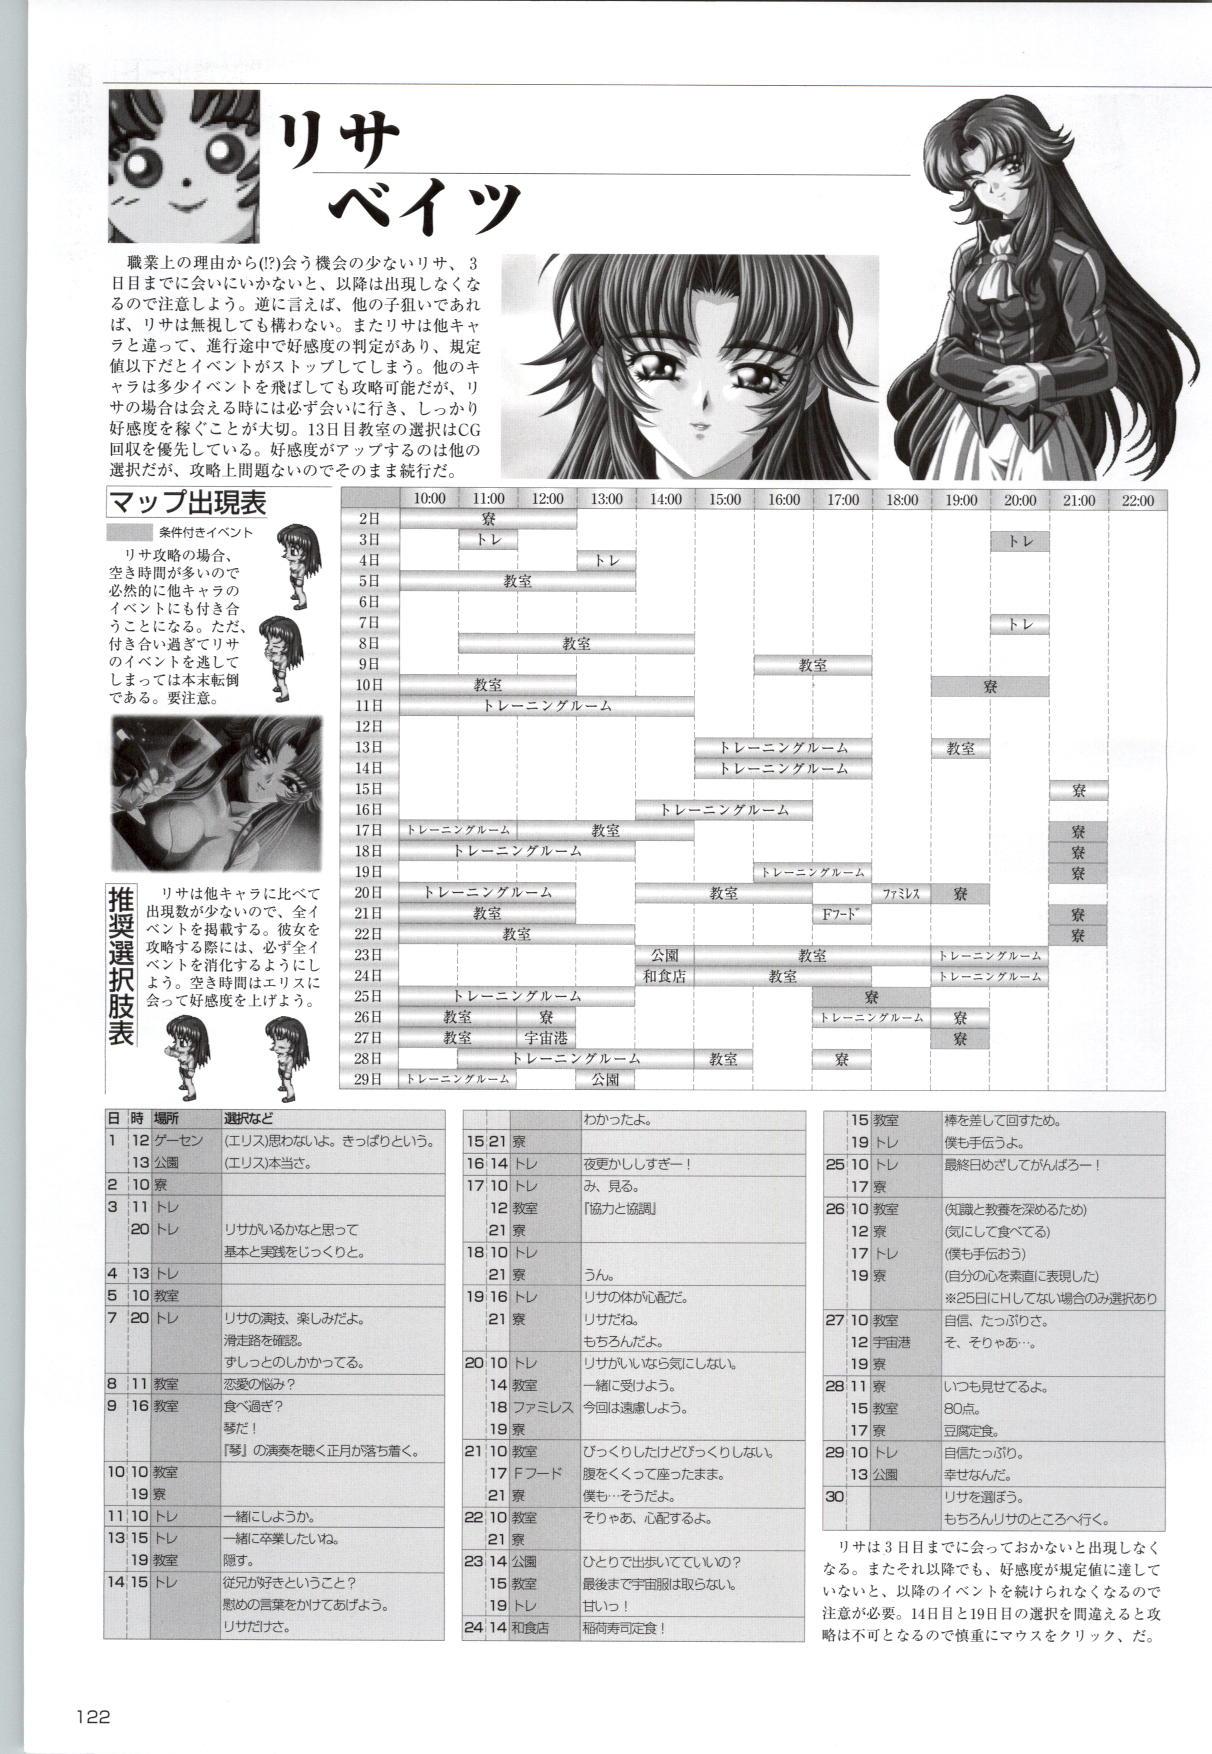 [Kinmedai Pink] ACTRESS Collection Kizuna + Seduce ~Yuuwaku~ + Hoshi no Pierce Computer Graphics & Original Pictures 122